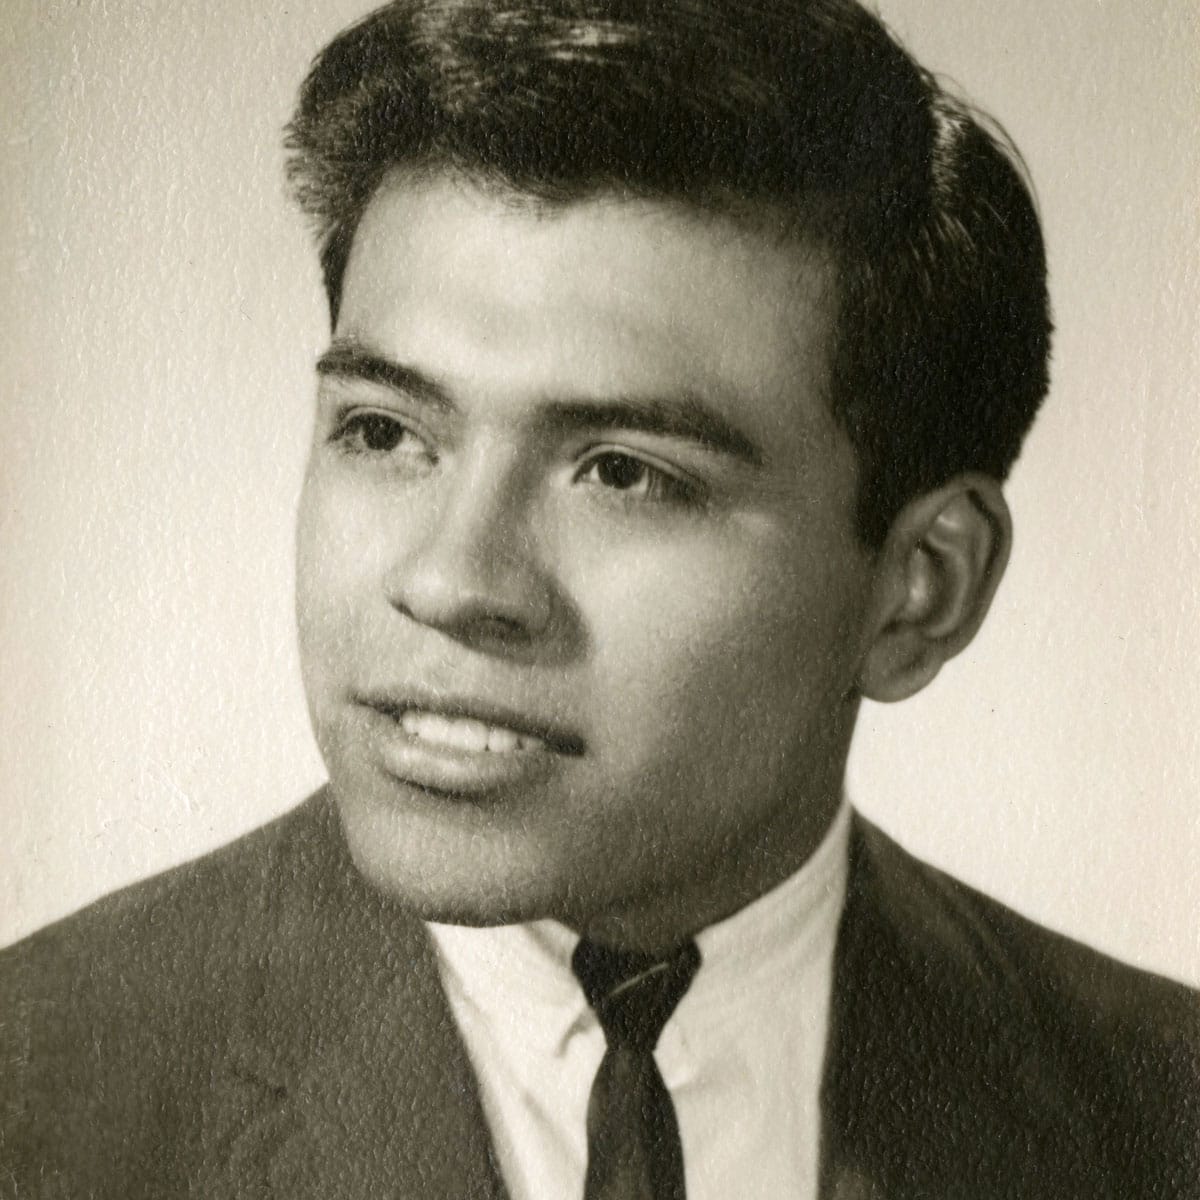 Eddy Cervantez portrait